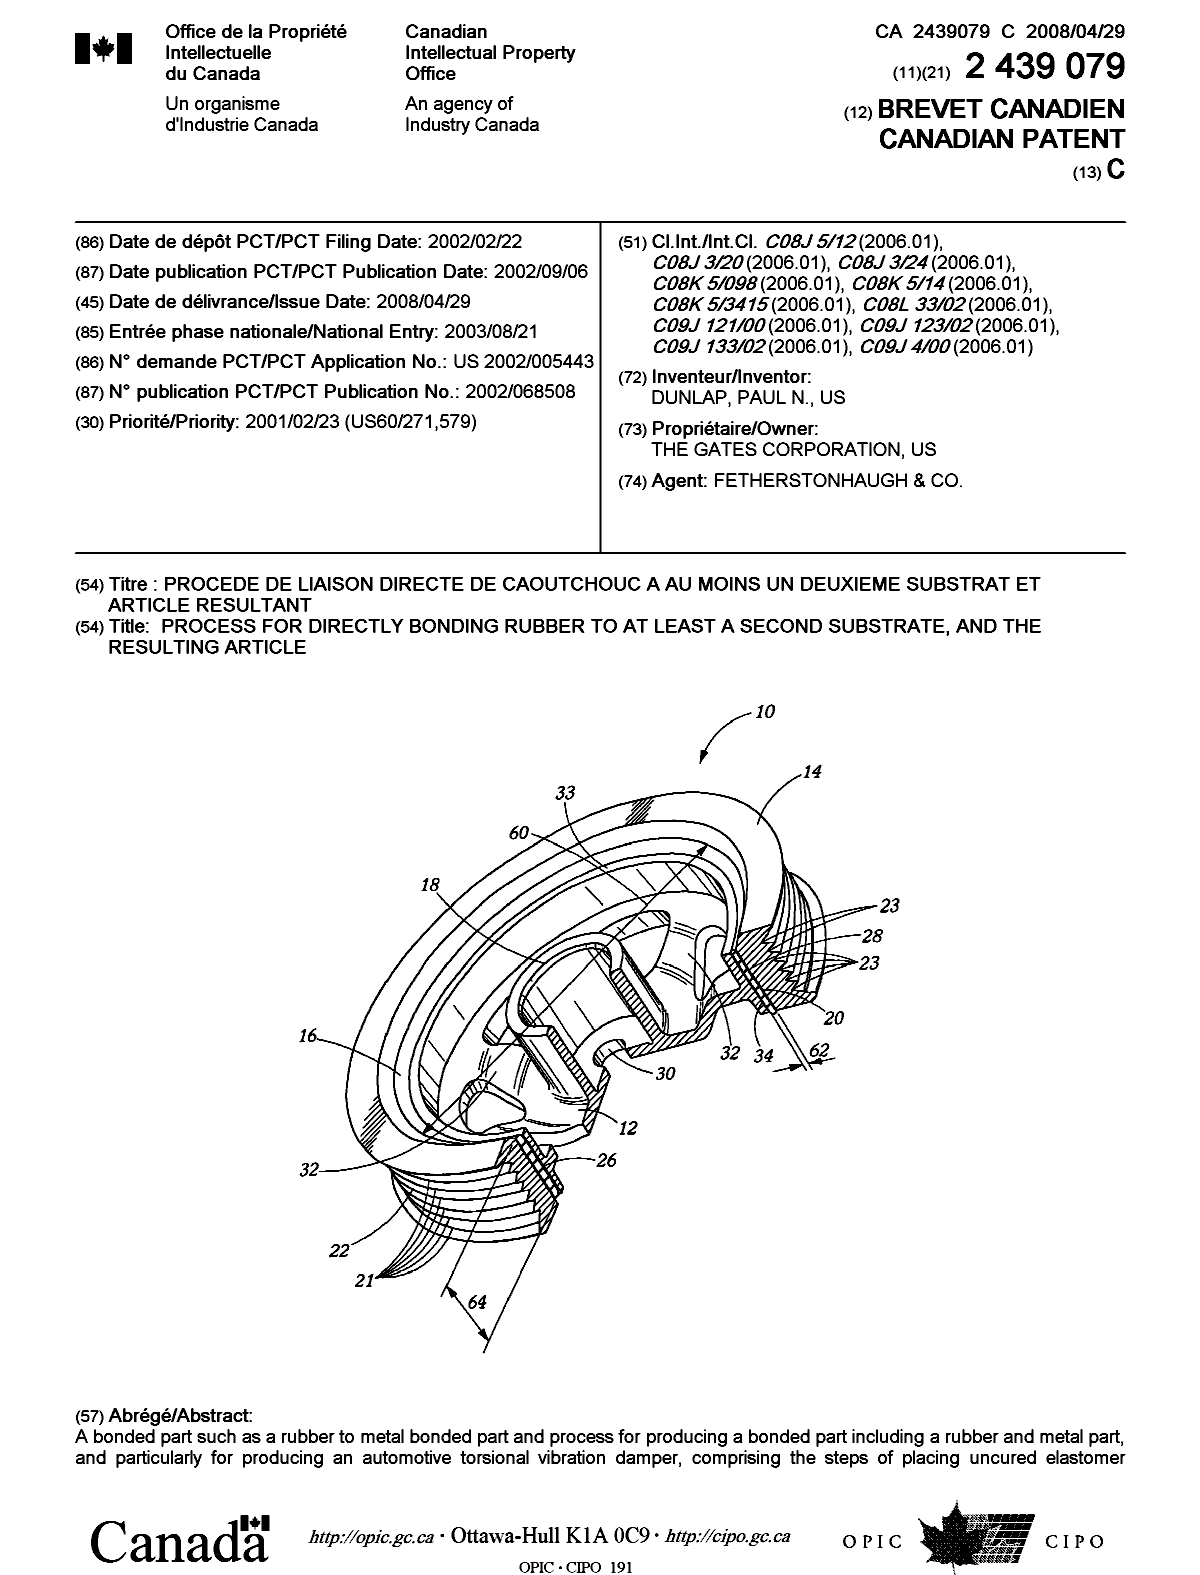 Document de brevet canadien 2439079. Page couverture 20080411. Image 1 de 2